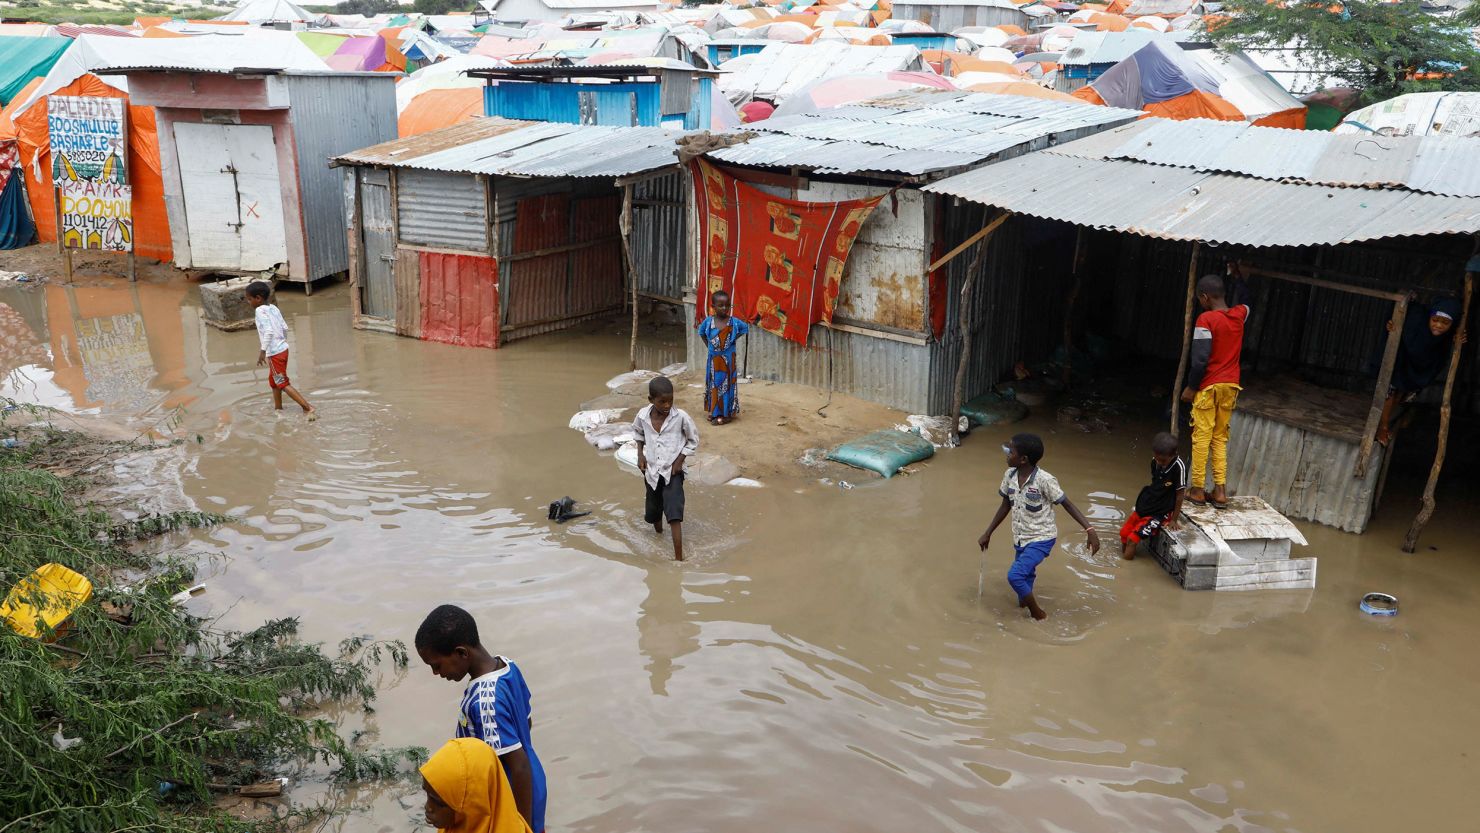 Many displaced as floods wreak havoc in Kenya.